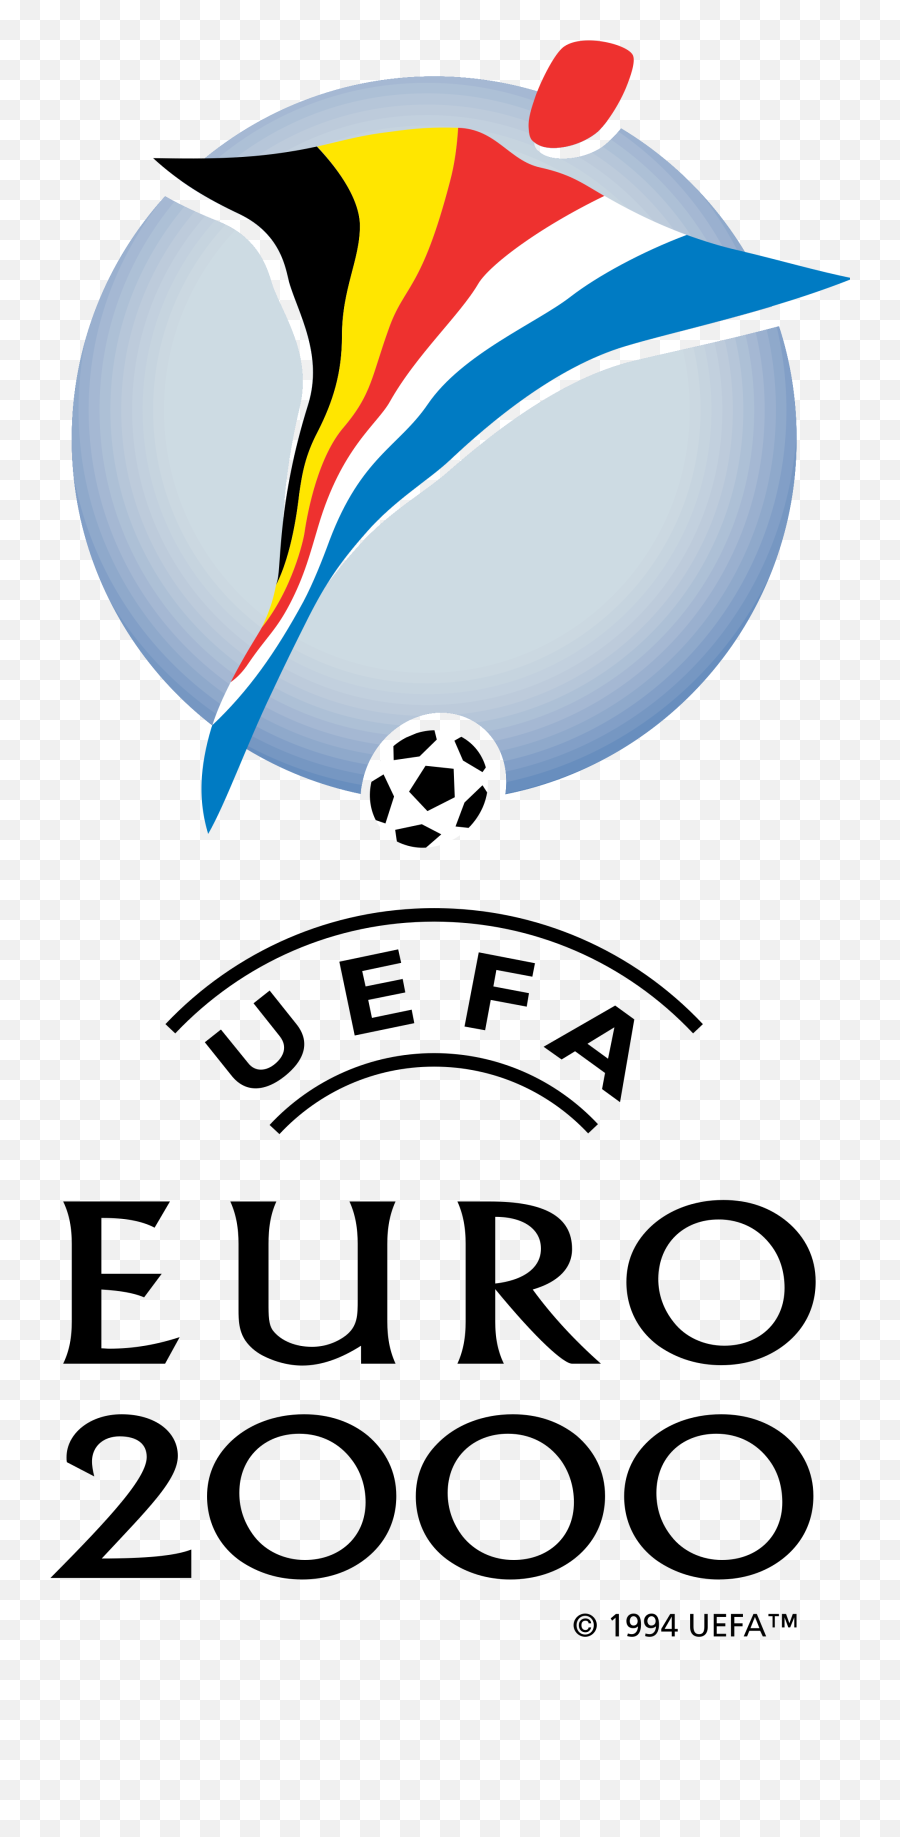 Uefa Euro 2000 Logo Png